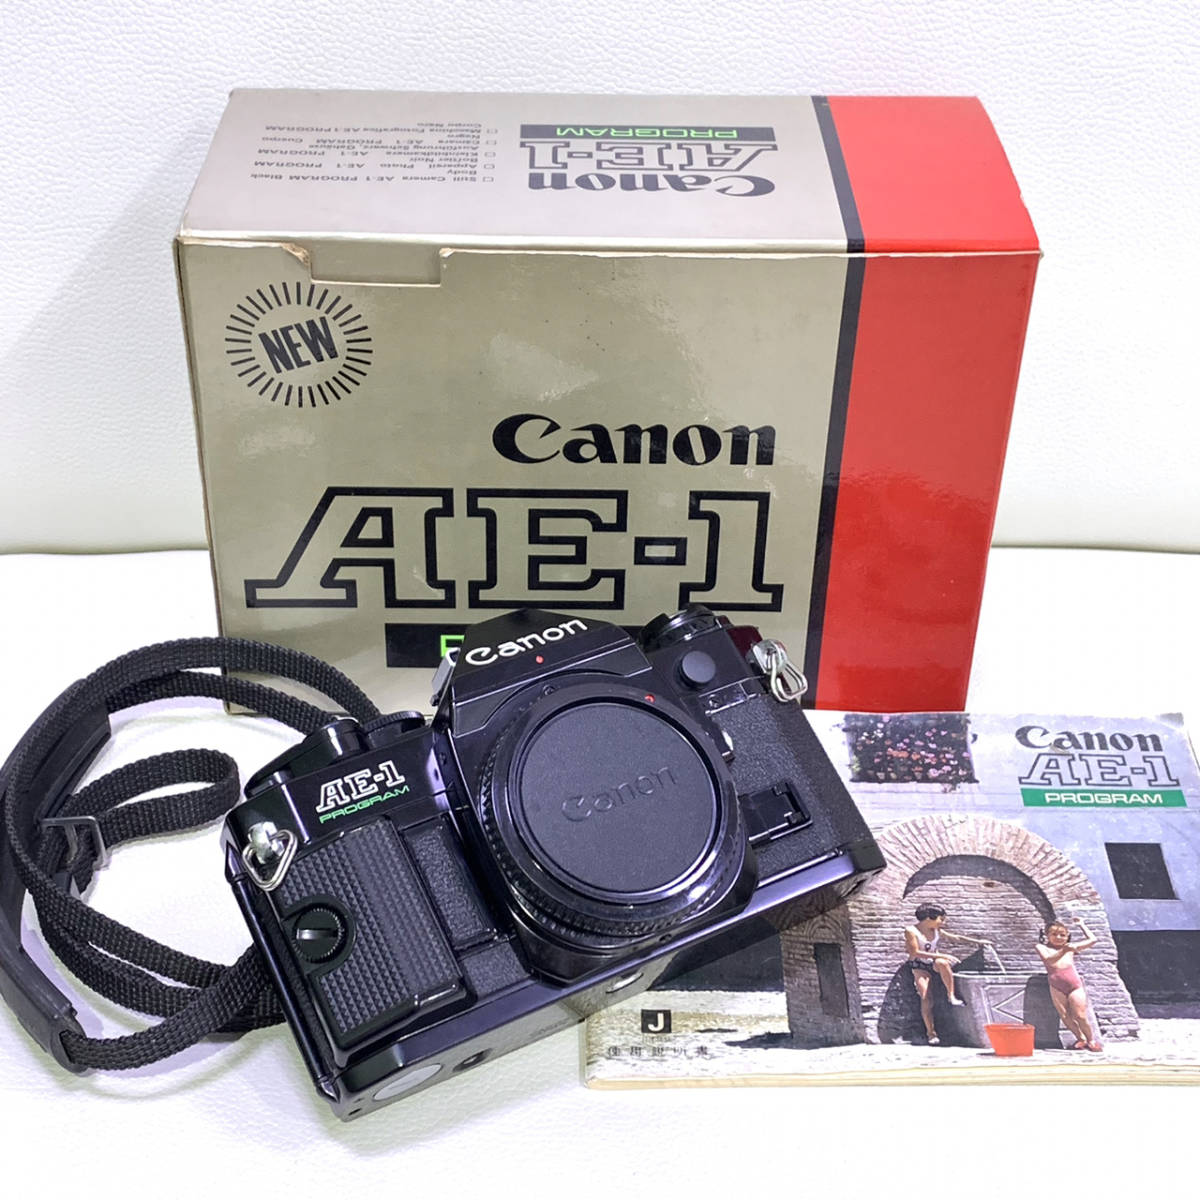 CANON キャノン AE-1 PROGRAM プログラム フィルム 一眼レフ カメラ ブラック ボディ 箱 付属品 ジャンク レトロ 1452